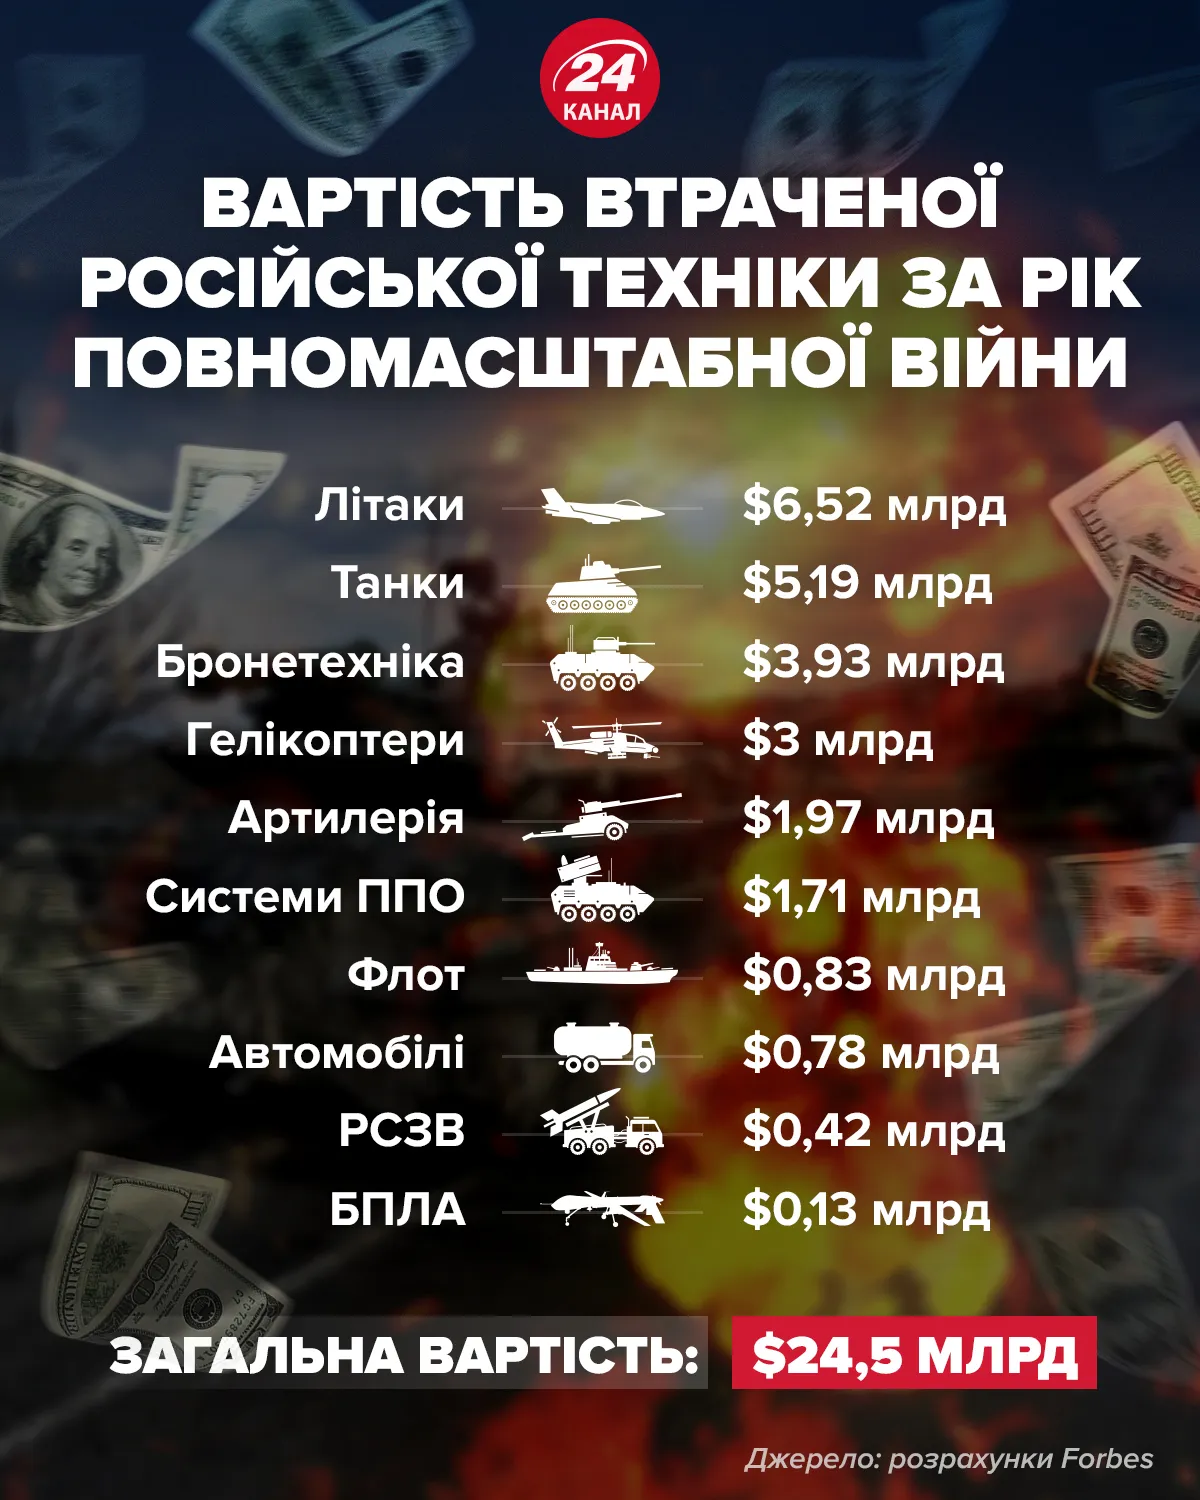 вартість втраченої російської техніки за рік війни